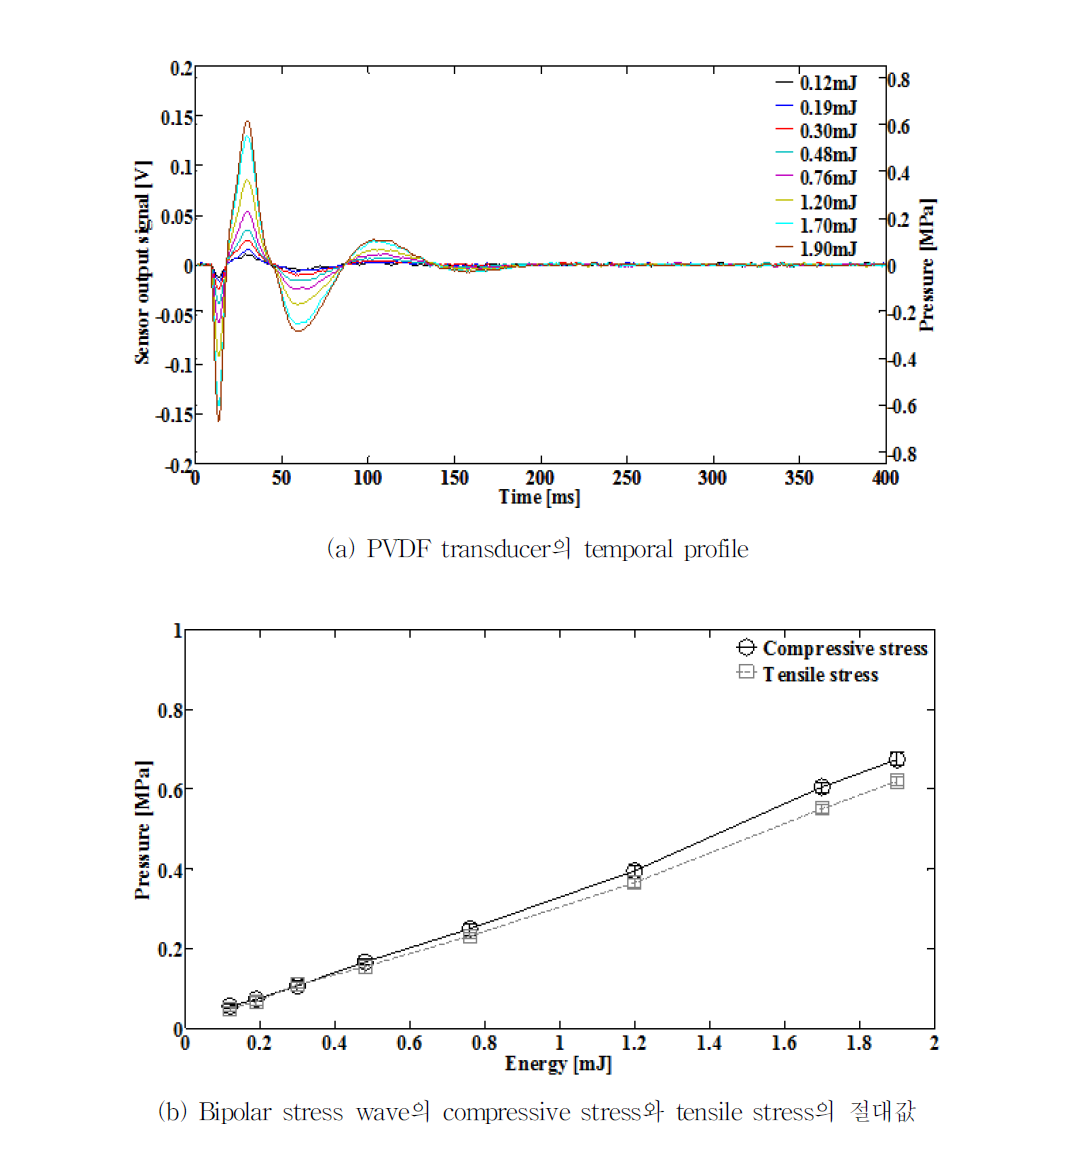 레이저 펄스 에너지 변화에 따른 PVDF Transducer의 출력전압과 압력